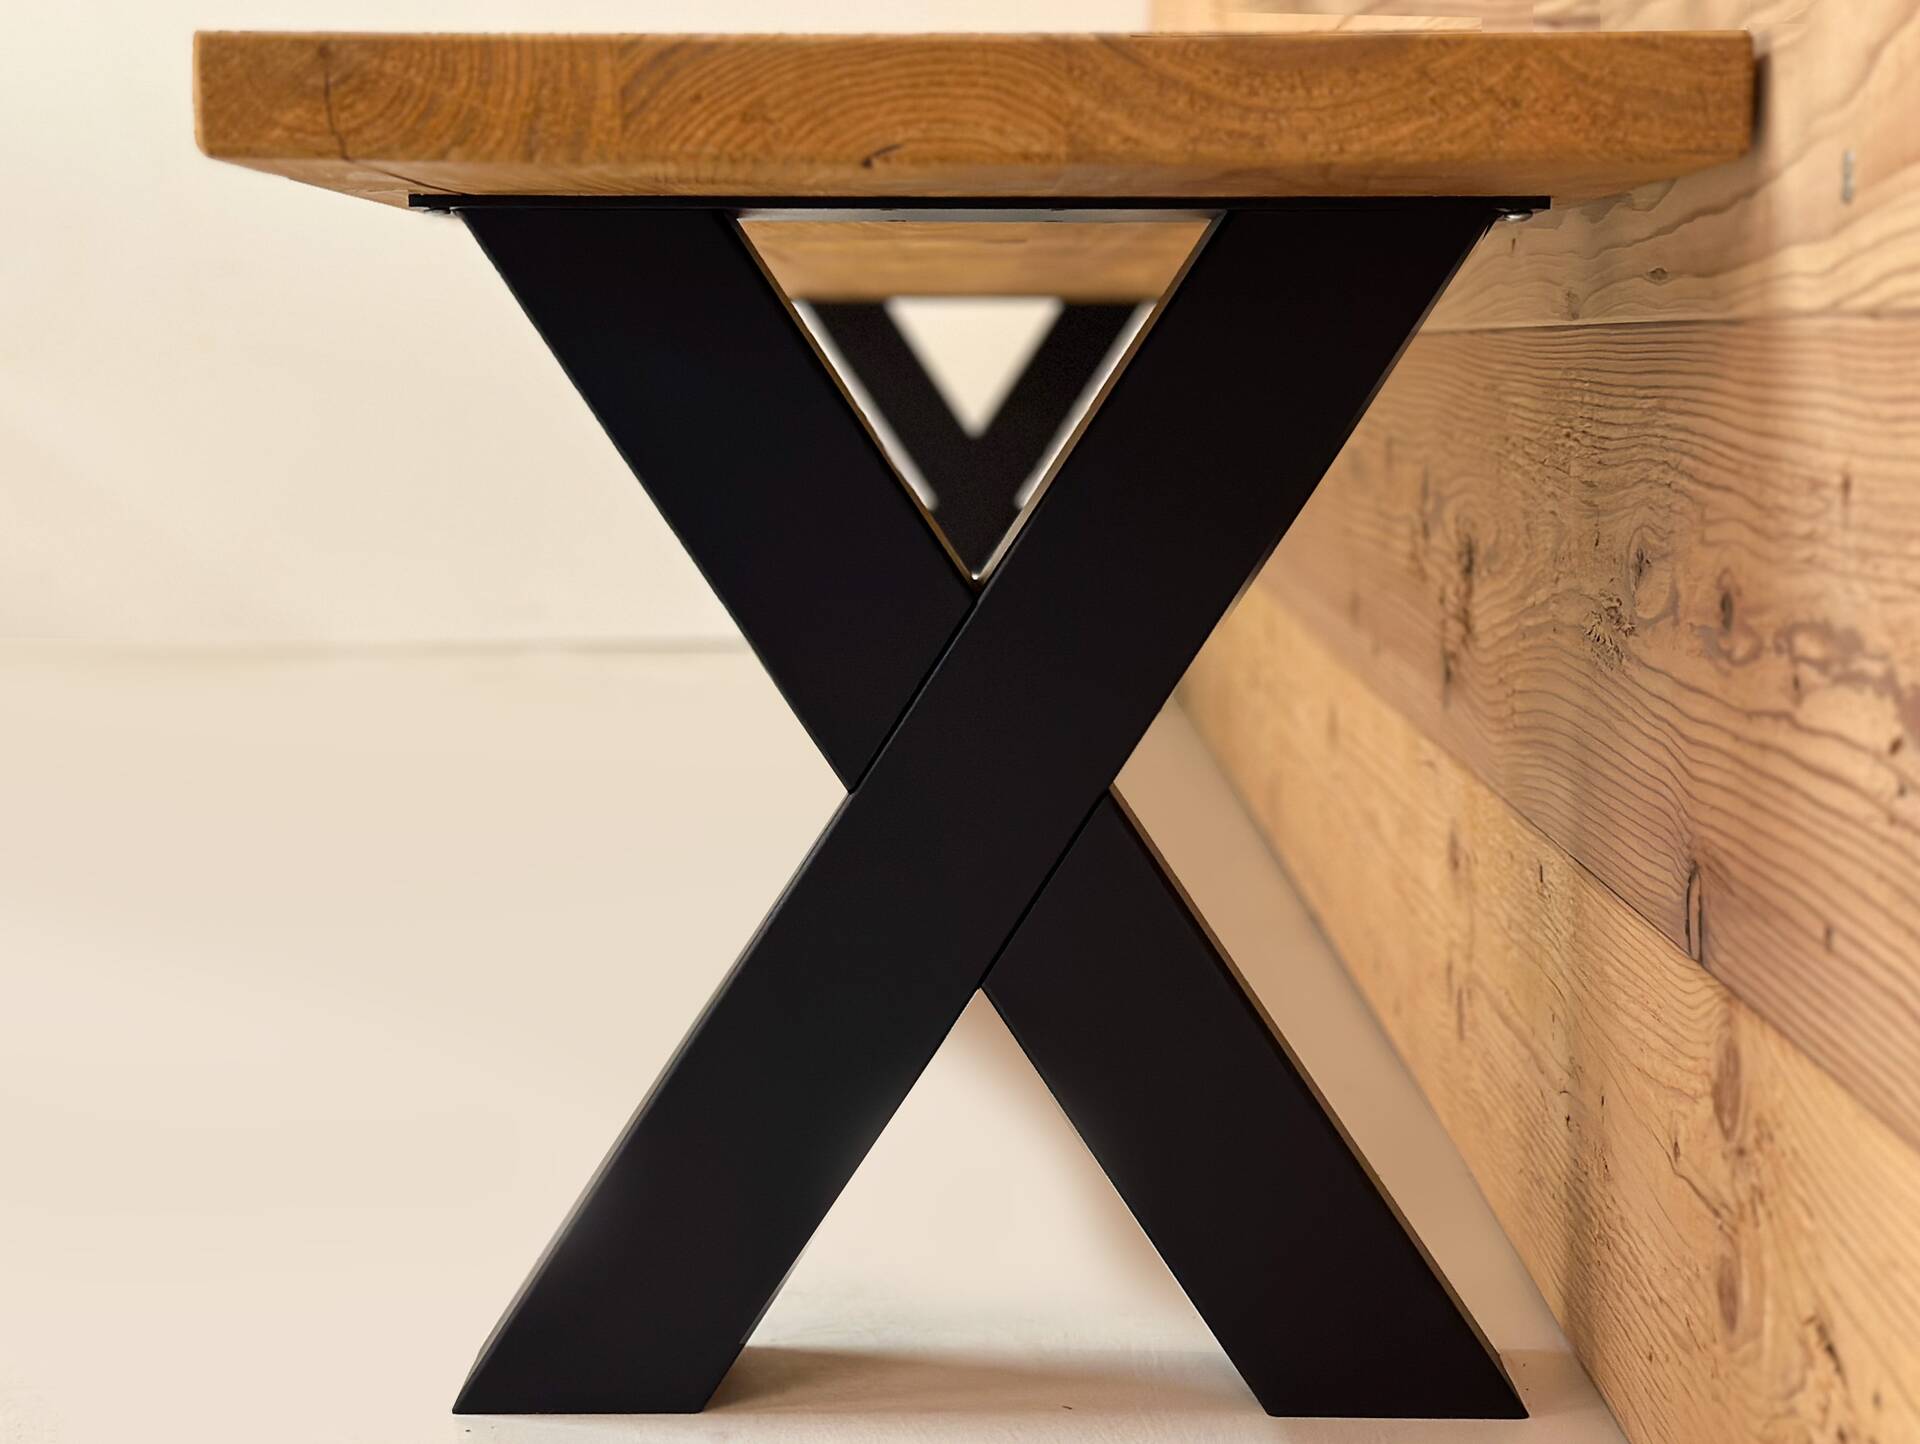 ALABAMA Sitzbank mit X-Beinen, Altholzoptik, Material Massivholz, THERMO-Fichte lackiert 220 cm | mit Rückenlehne | natur